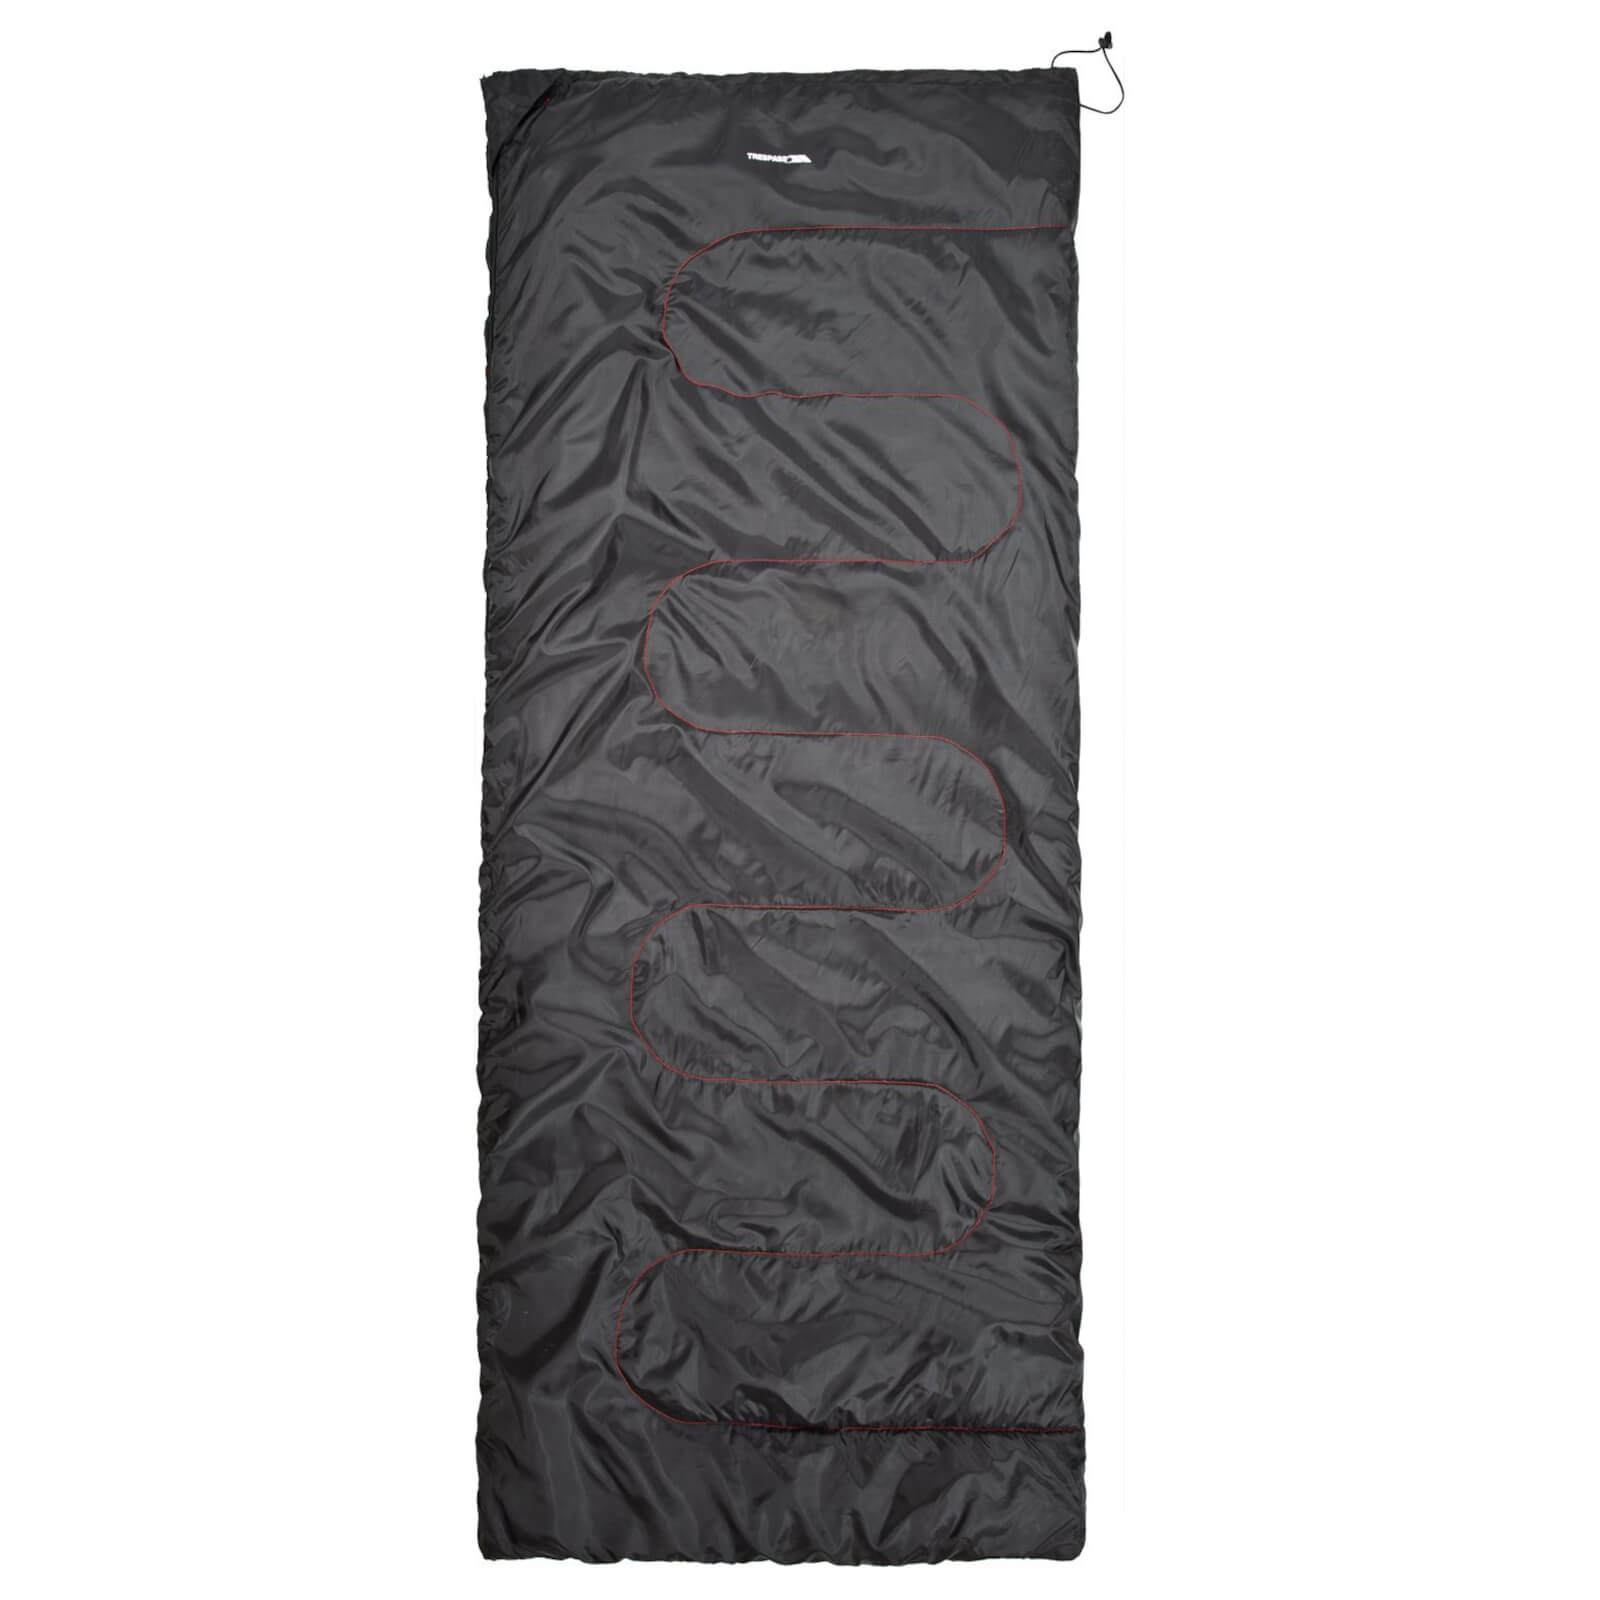 Trespass Envelop 3 Season Synthetic Sleeping Bag